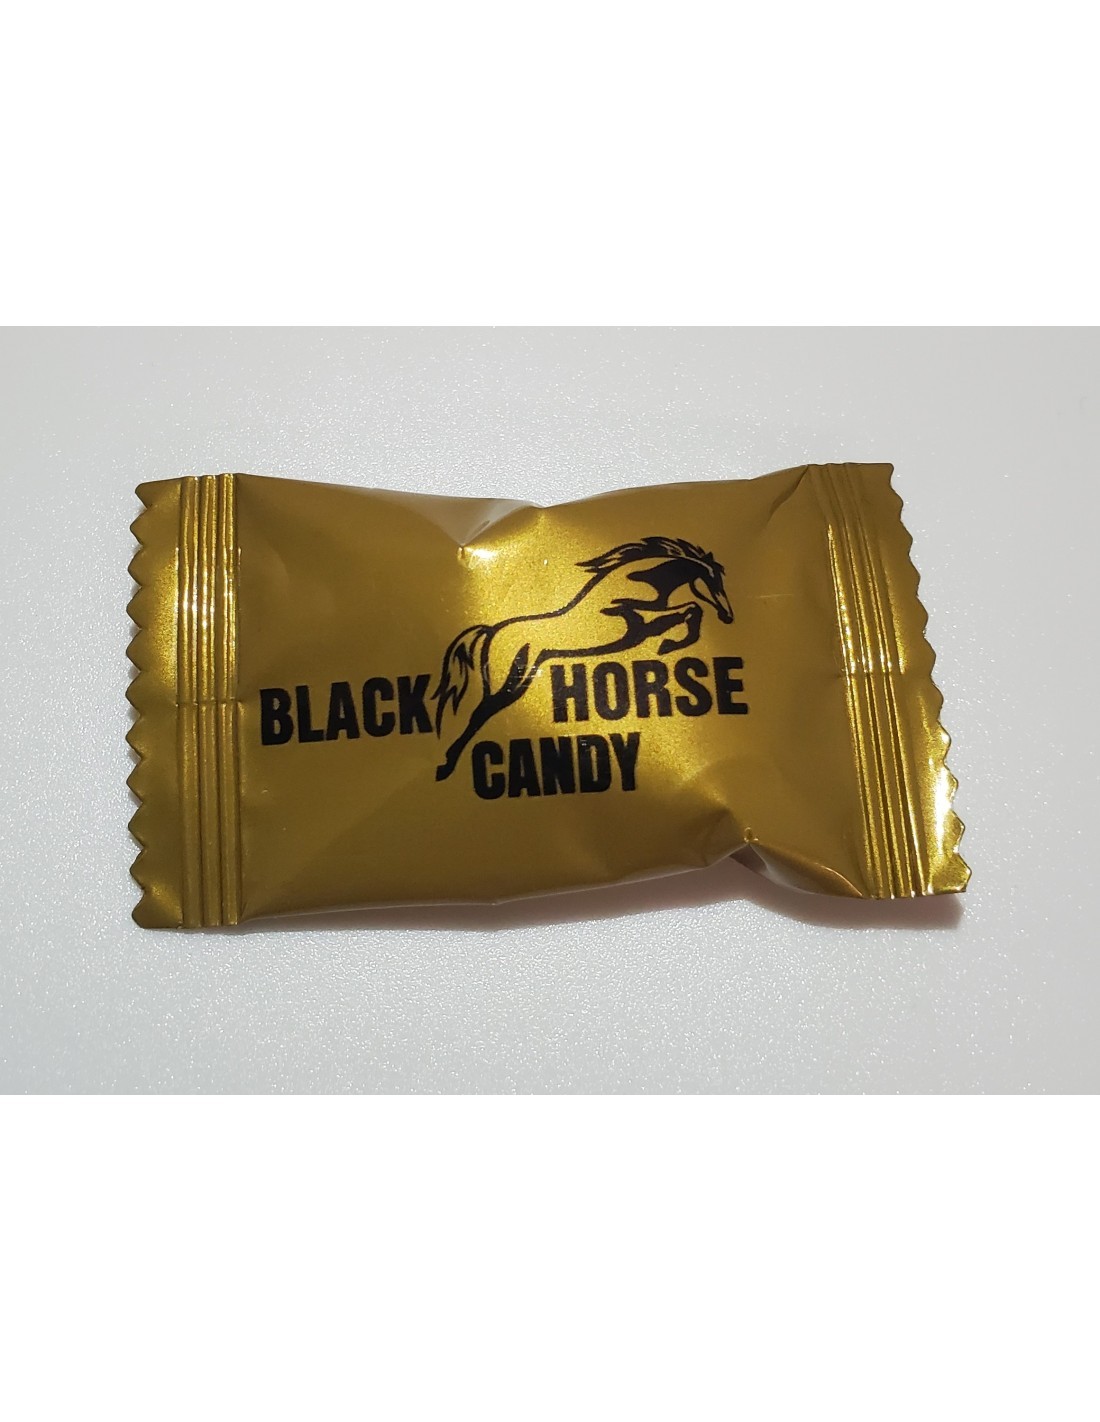 Black Horse Candy Bonbon aphrodisiaque boite de 12 bonbons